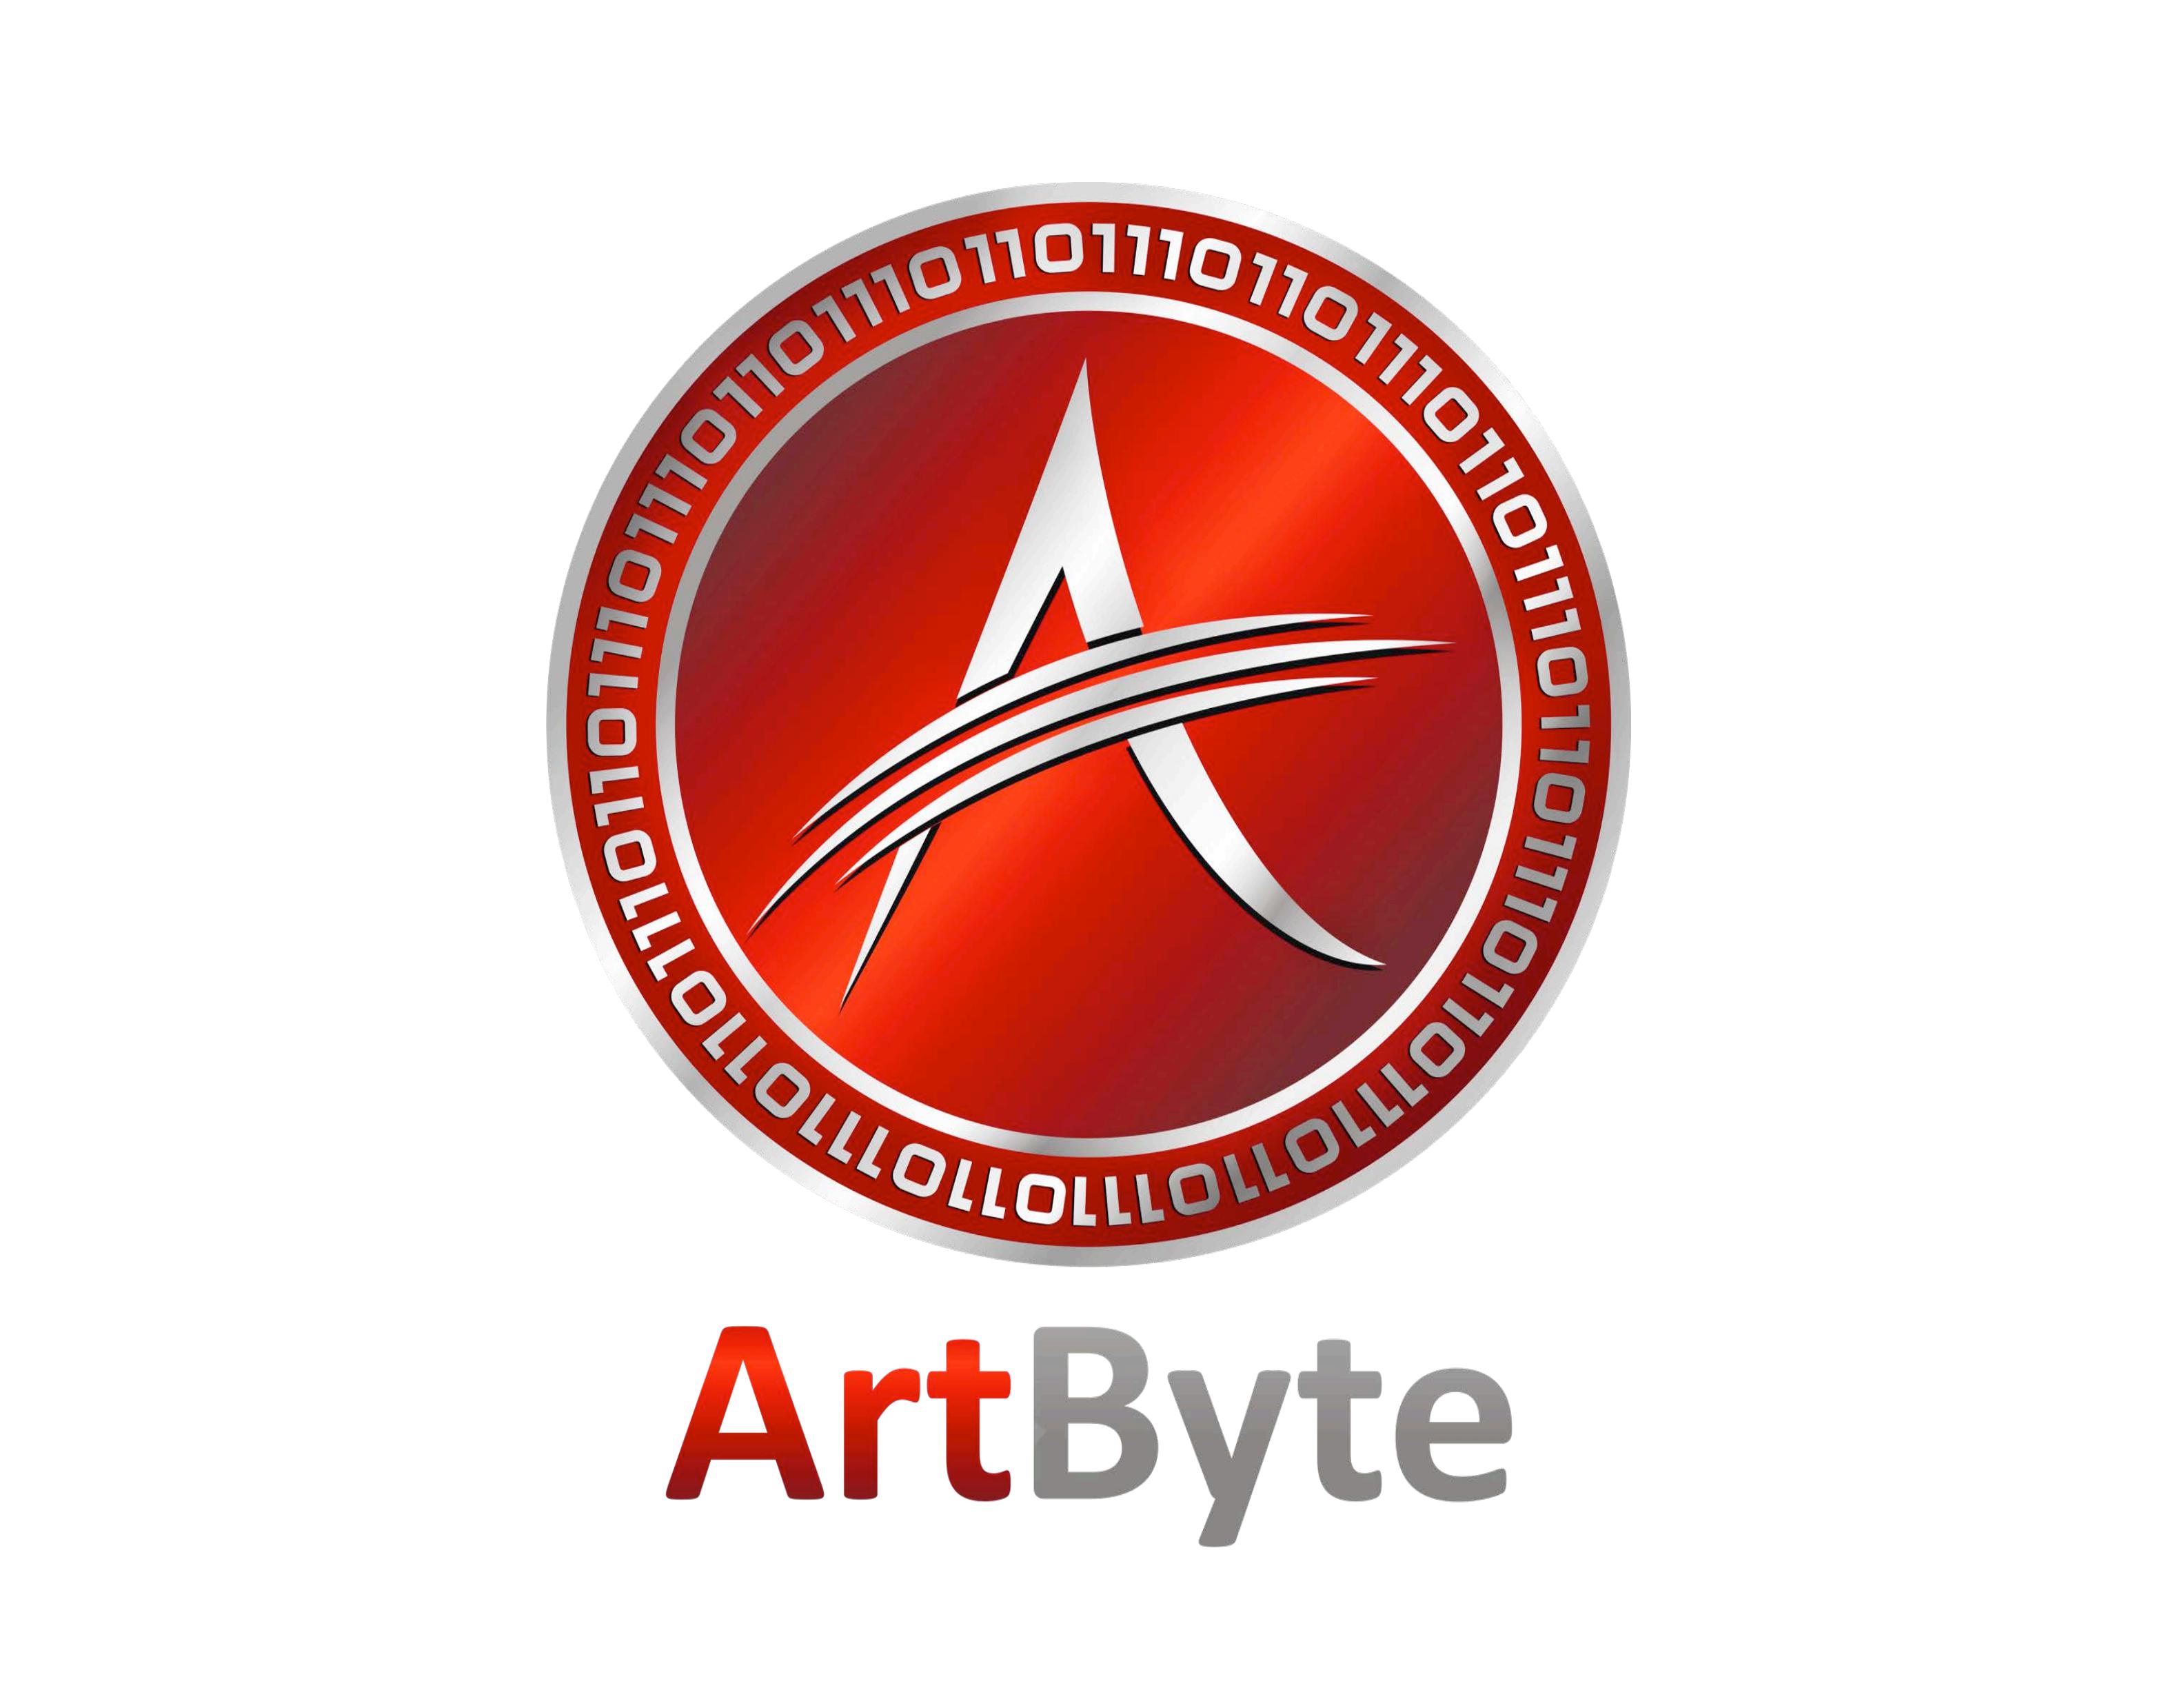 ABY_ArtByte_Presentation_2018_00.jpg